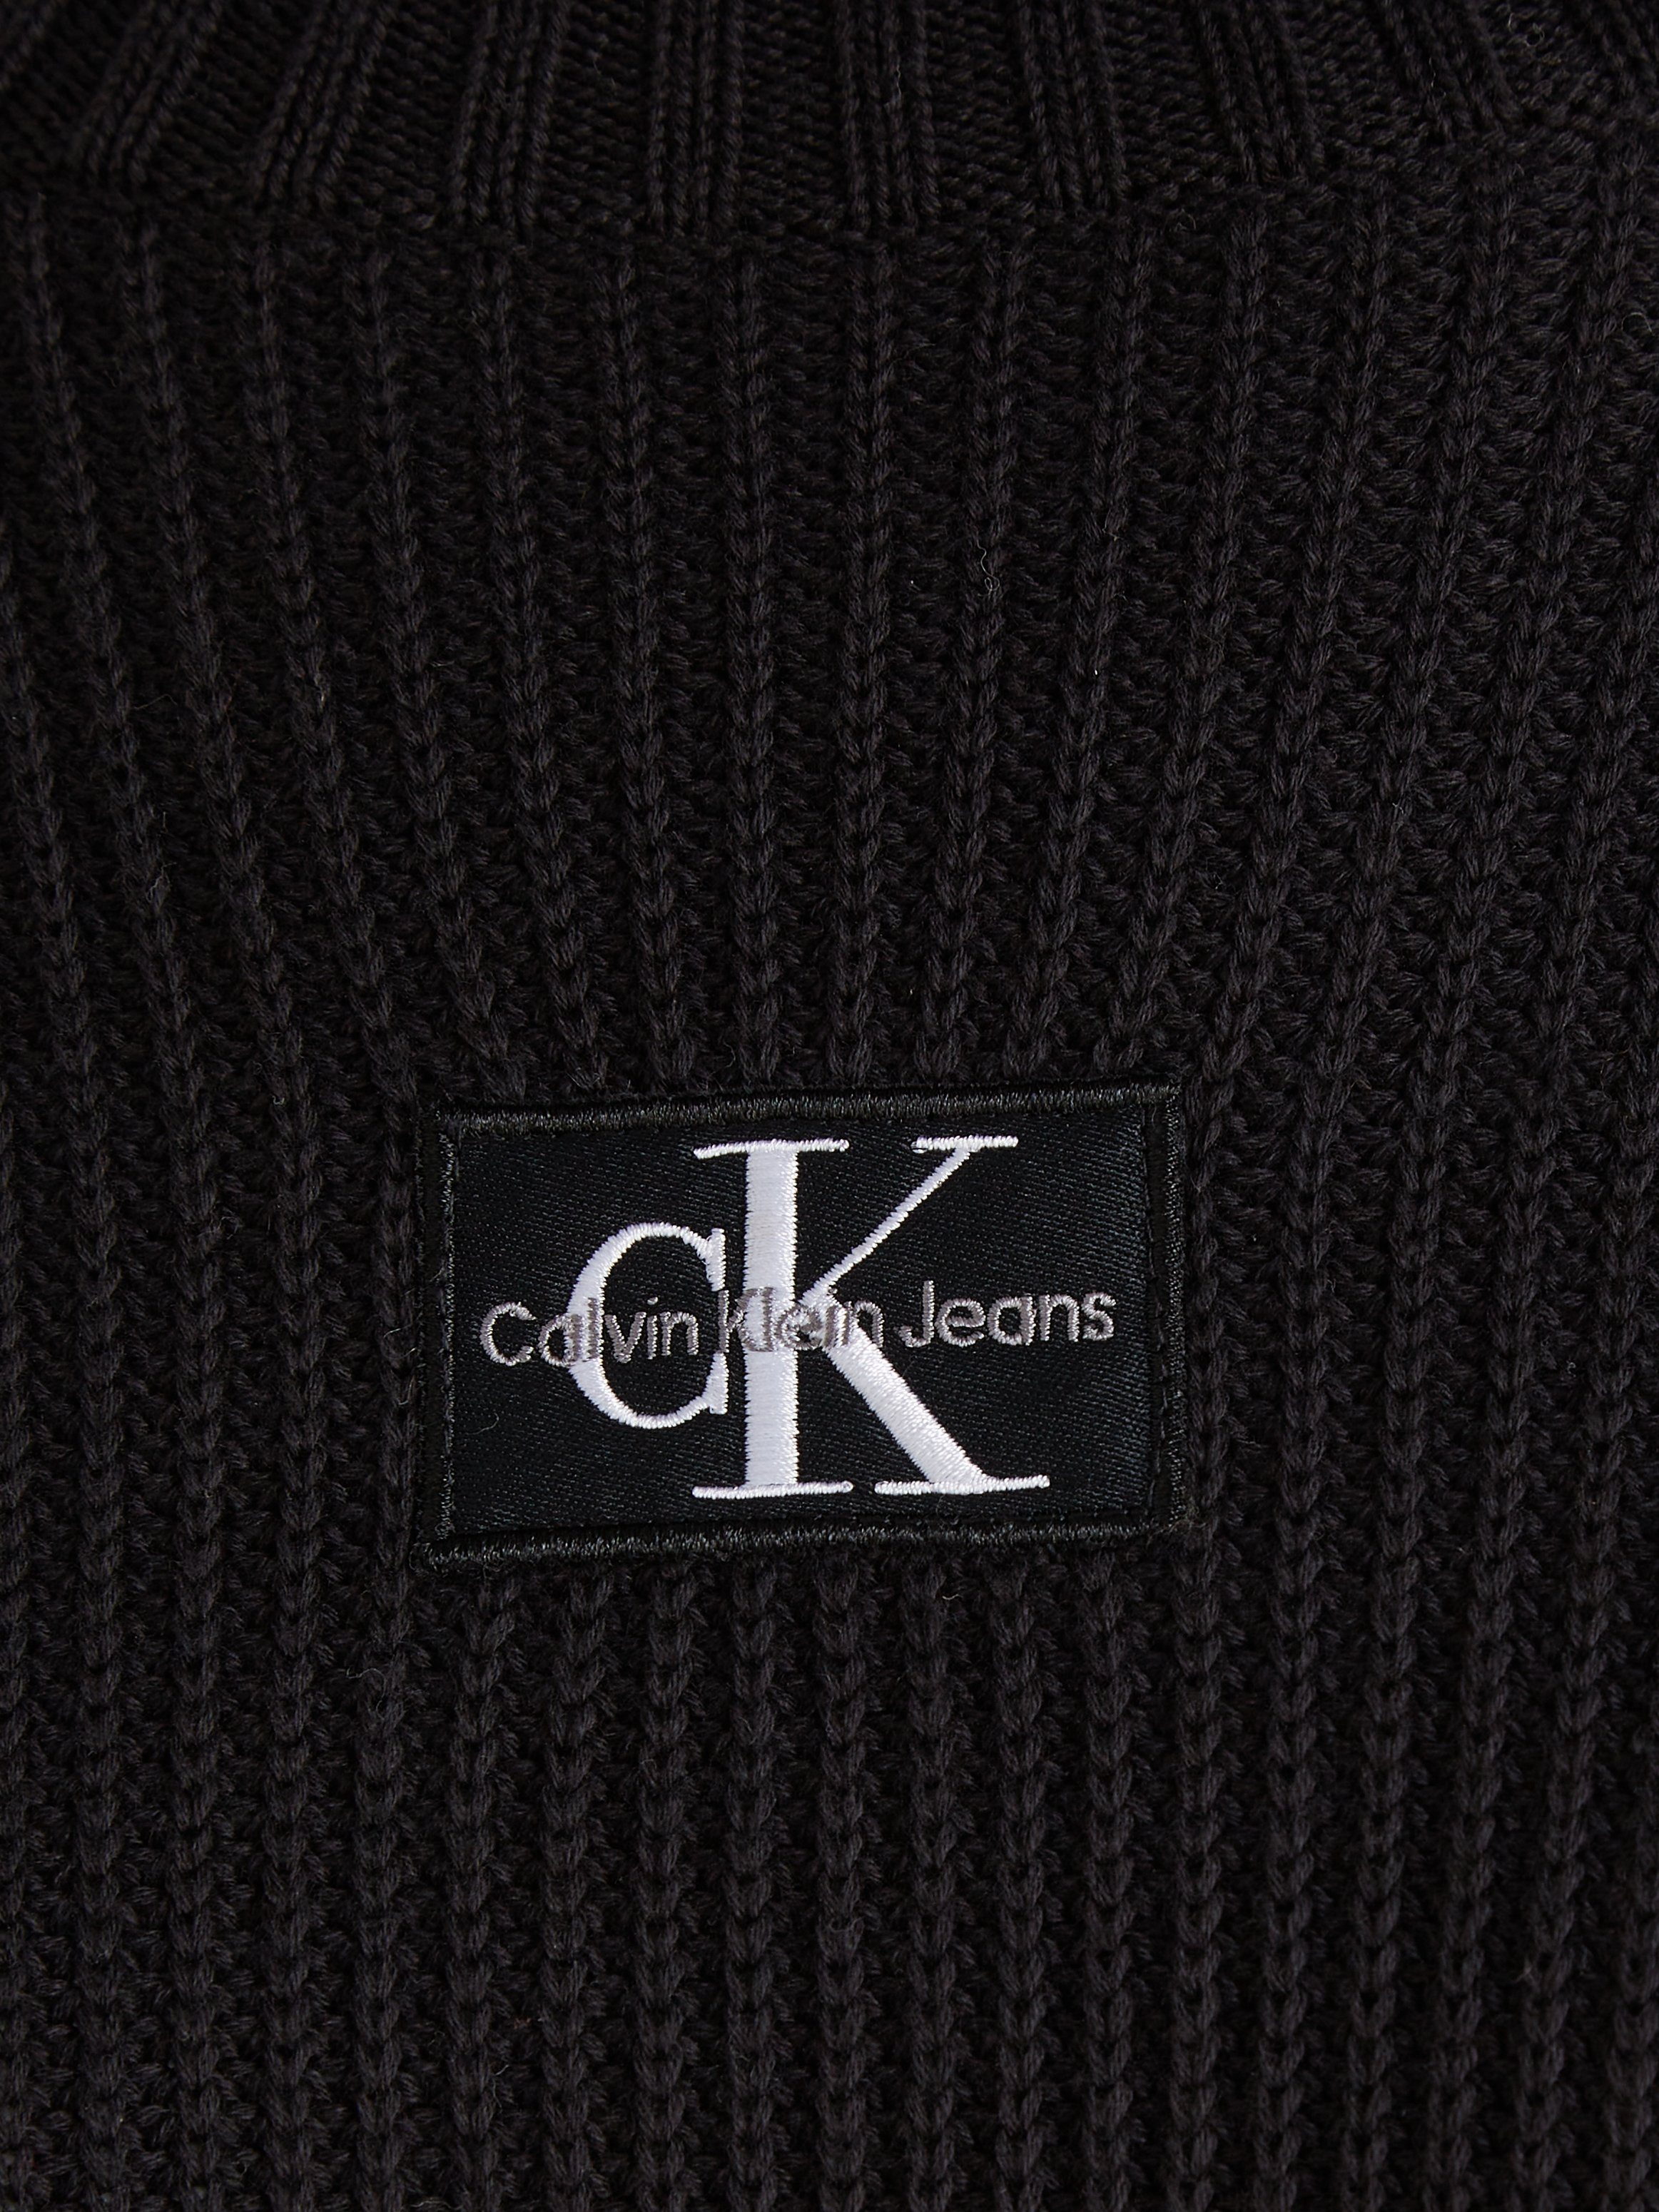 Black Jeans Sweatkleid WOVEN LOOSE Klein Ck LABEL SWEATER Calvin DRESS